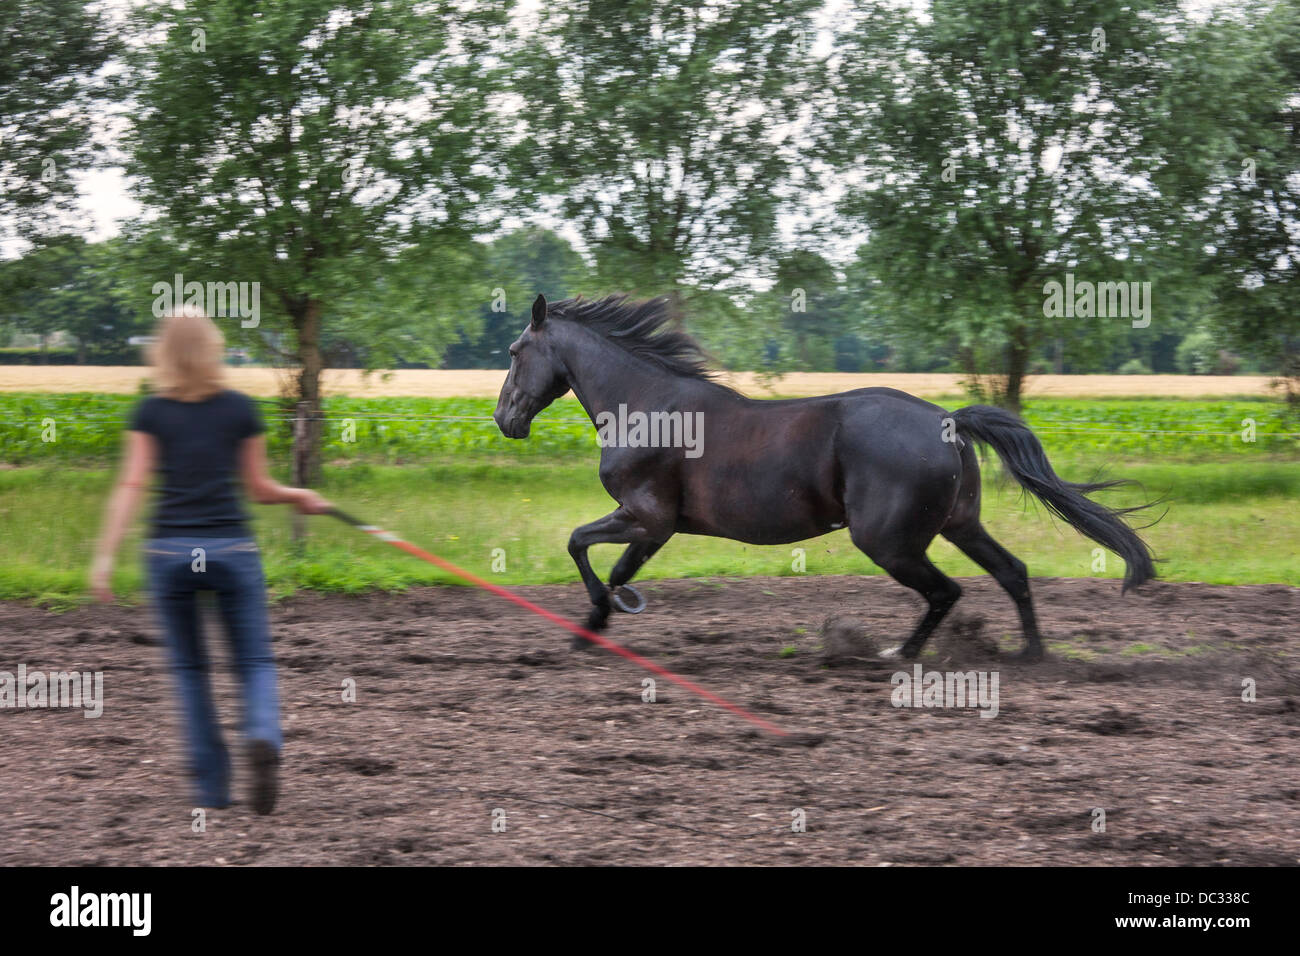 Jinete femenino con látigo marrón entrenamiento el galope andar a caballo durante la sesión de doma Foto de stock